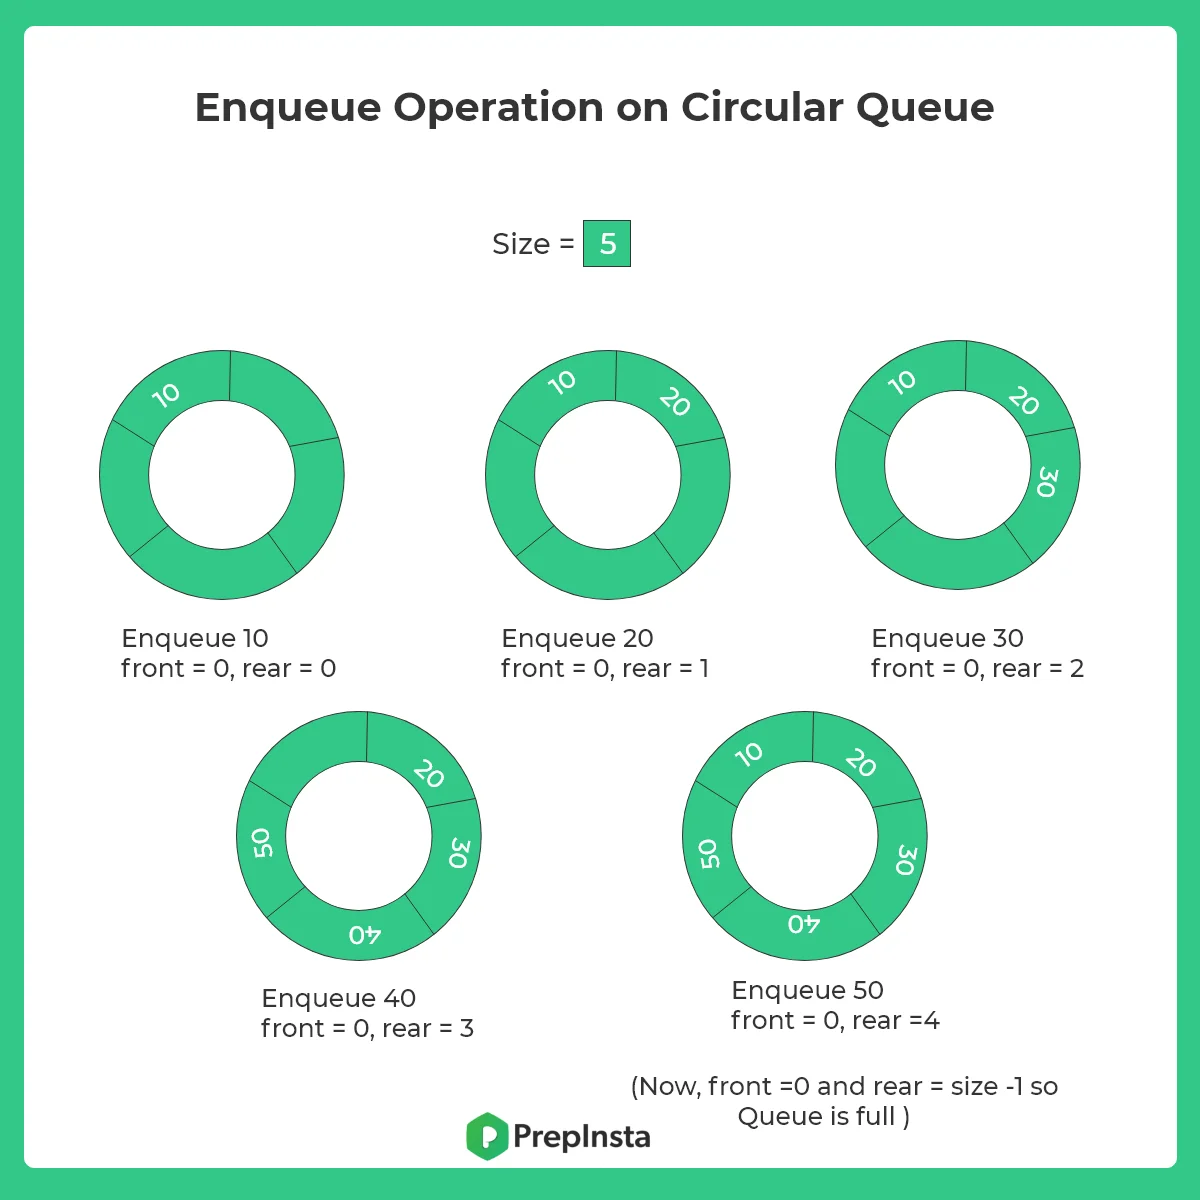 Enqueue operation on a circular queue